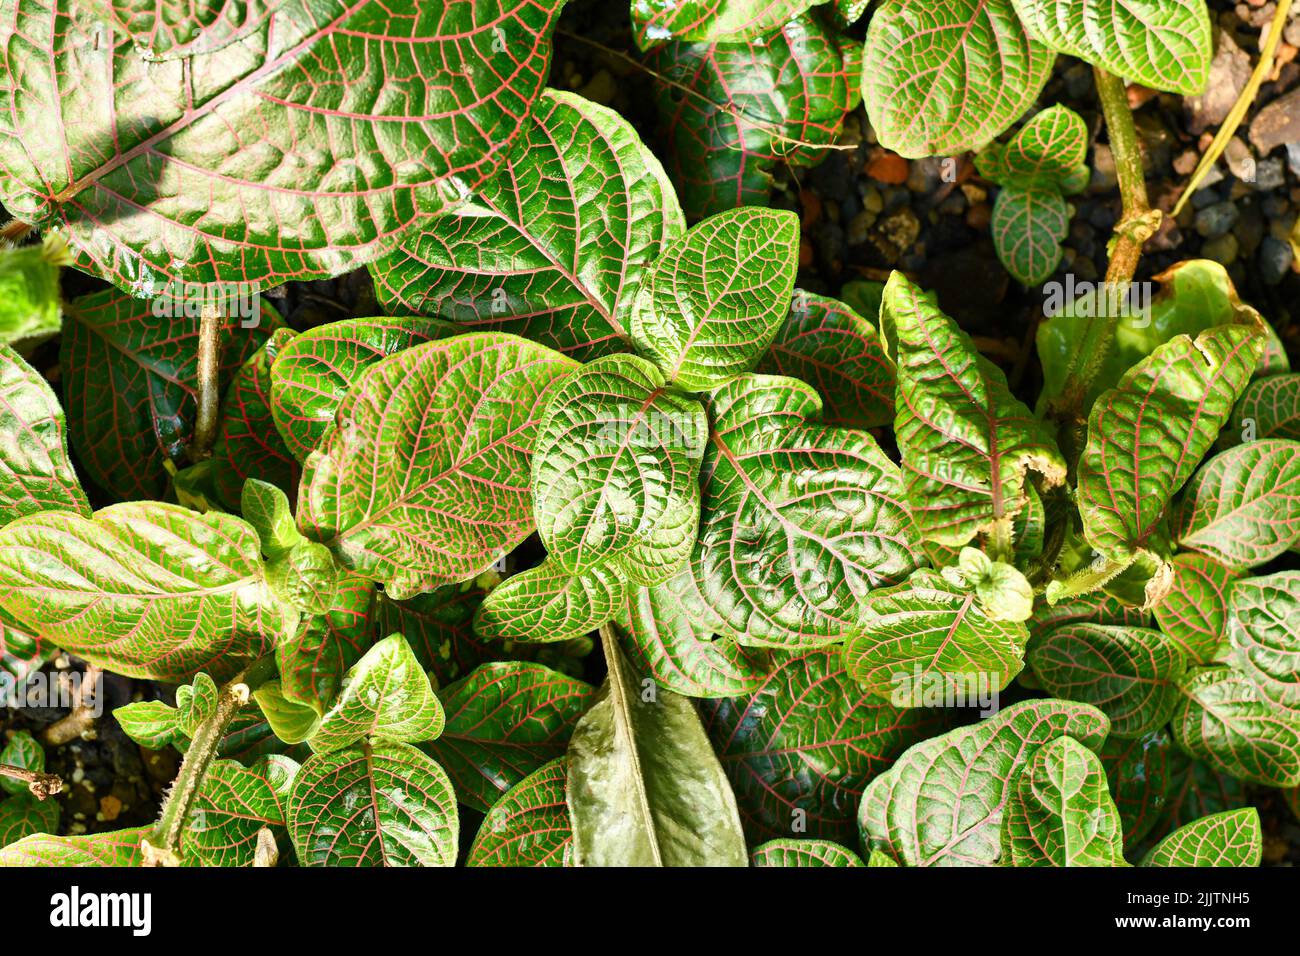 Vista superior de la planta tropical 'Fittonia gigantea' Nerv con vetas rojas cubriendo el suelo Foto de stock